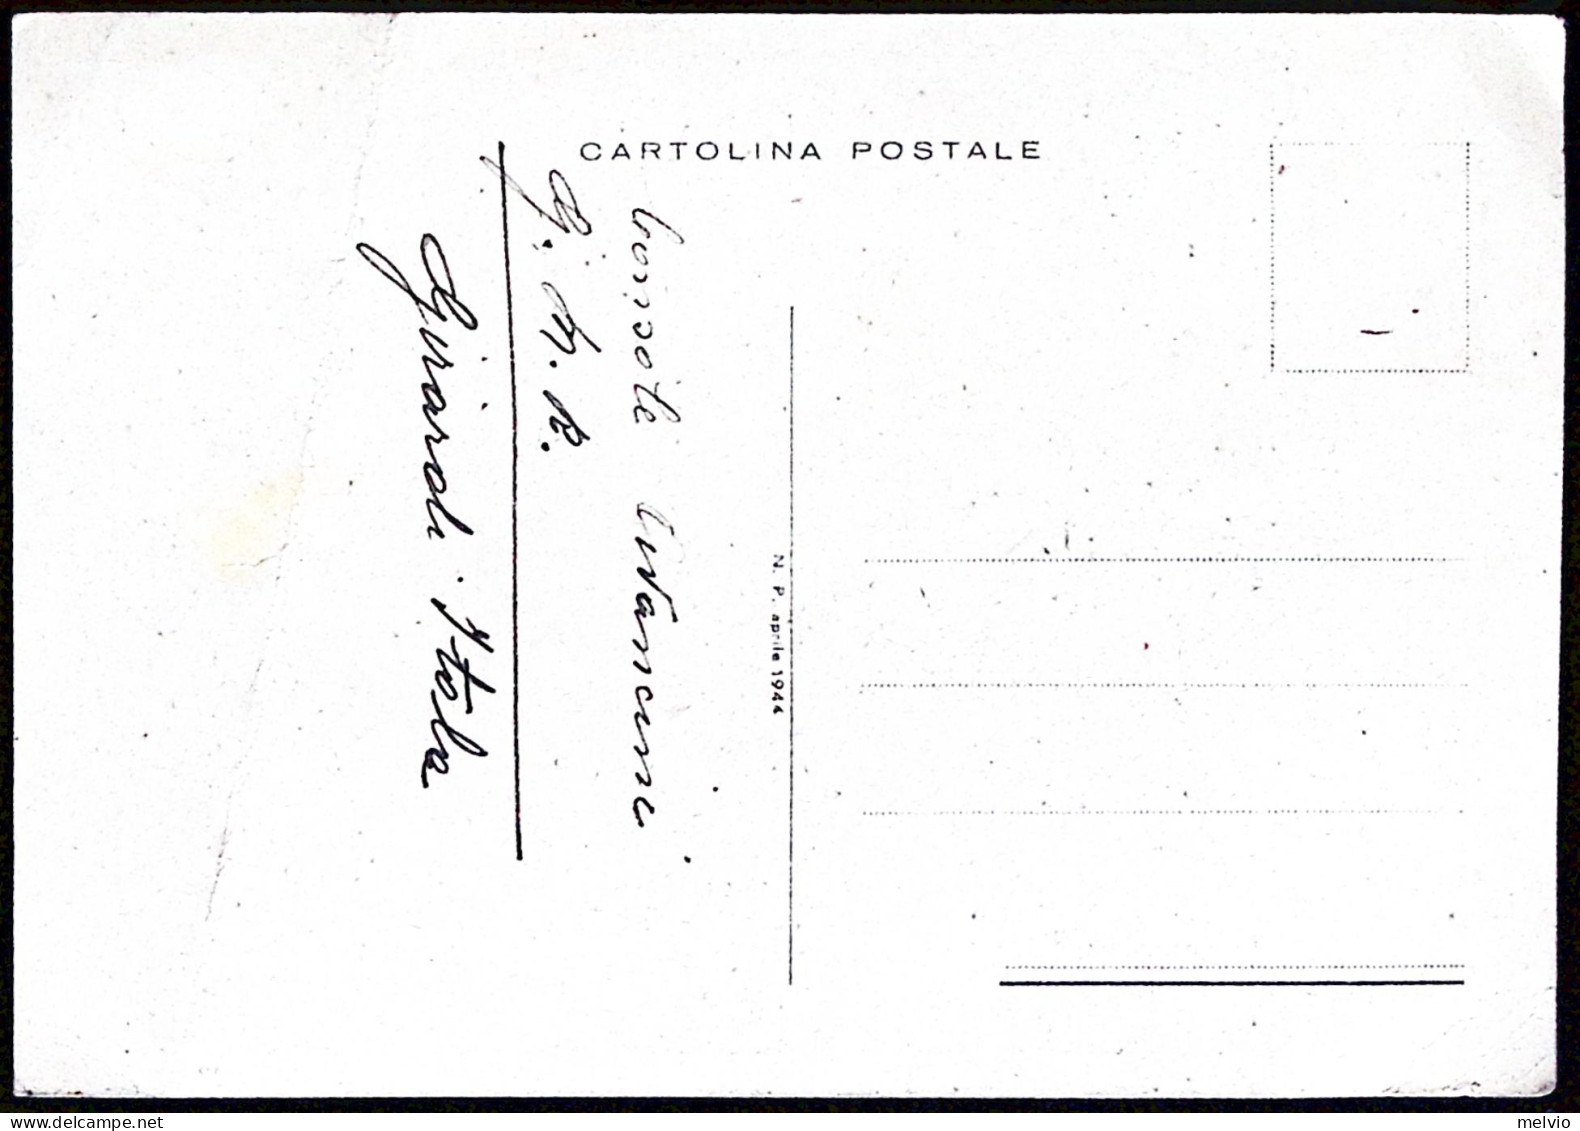 1944-RSI Cartolina Domenica Del Corriere Attacco Di Aerosilurante Nella Baia Di  - Poststempel